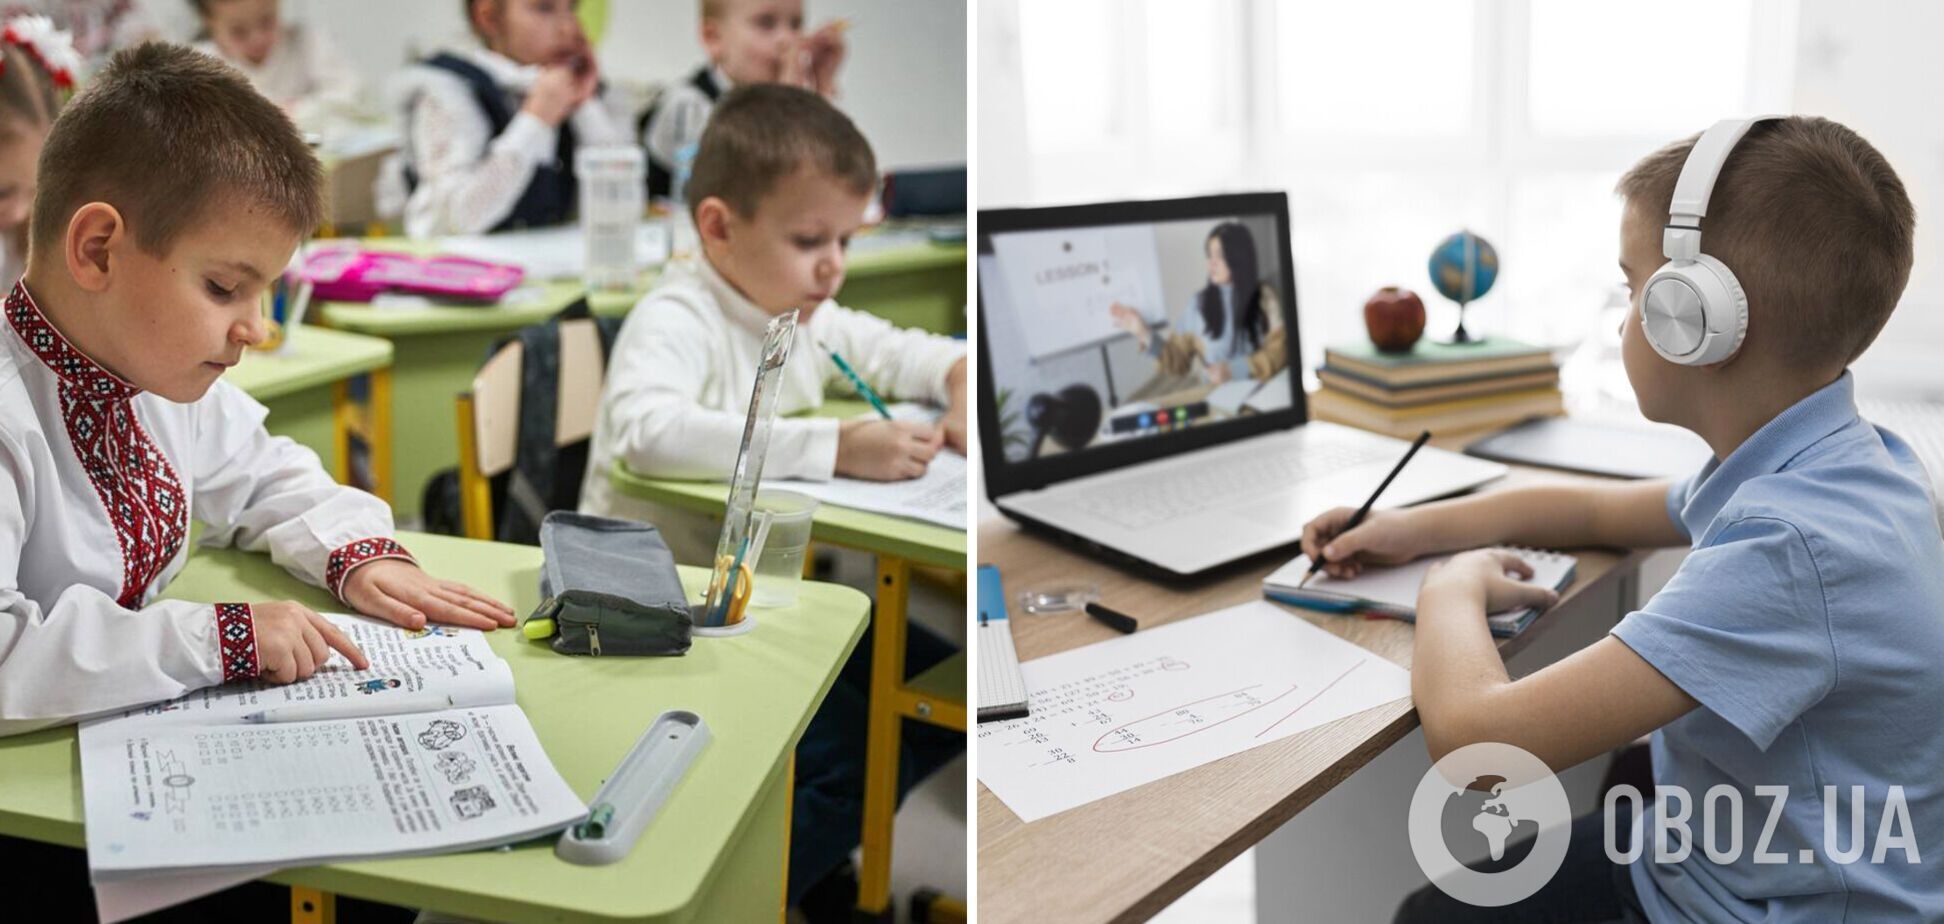 Сколько детей в Украине учится онлайн и какой предмет 'провис' больше всего: свежие результаты исследования